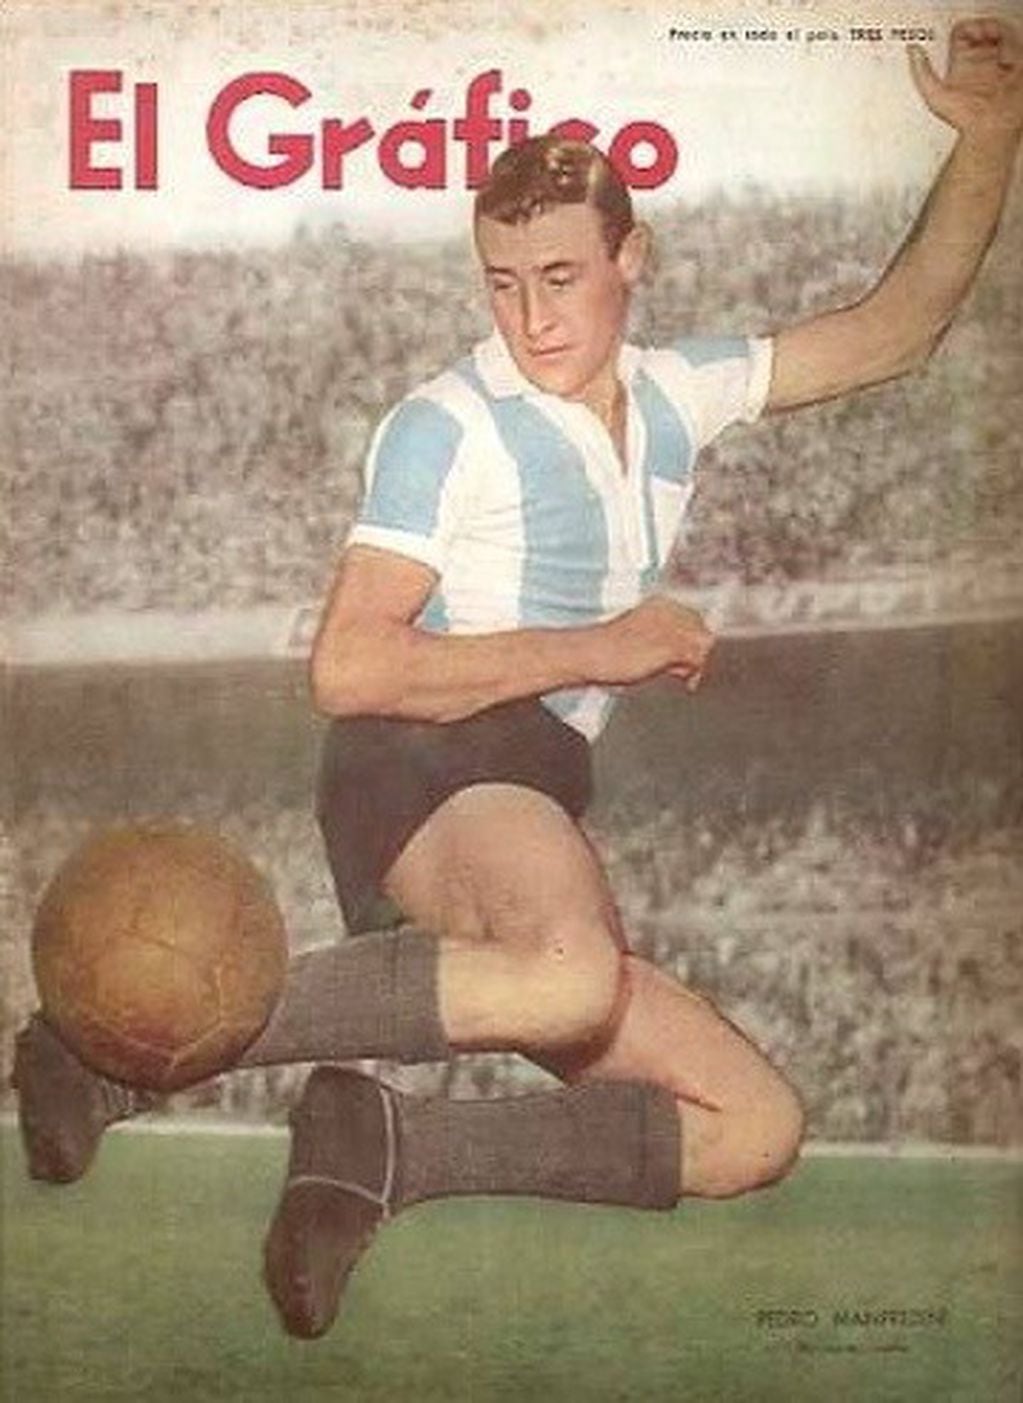 Pedro Manfredini en la tapa de la revista deportiva El Gráfico.